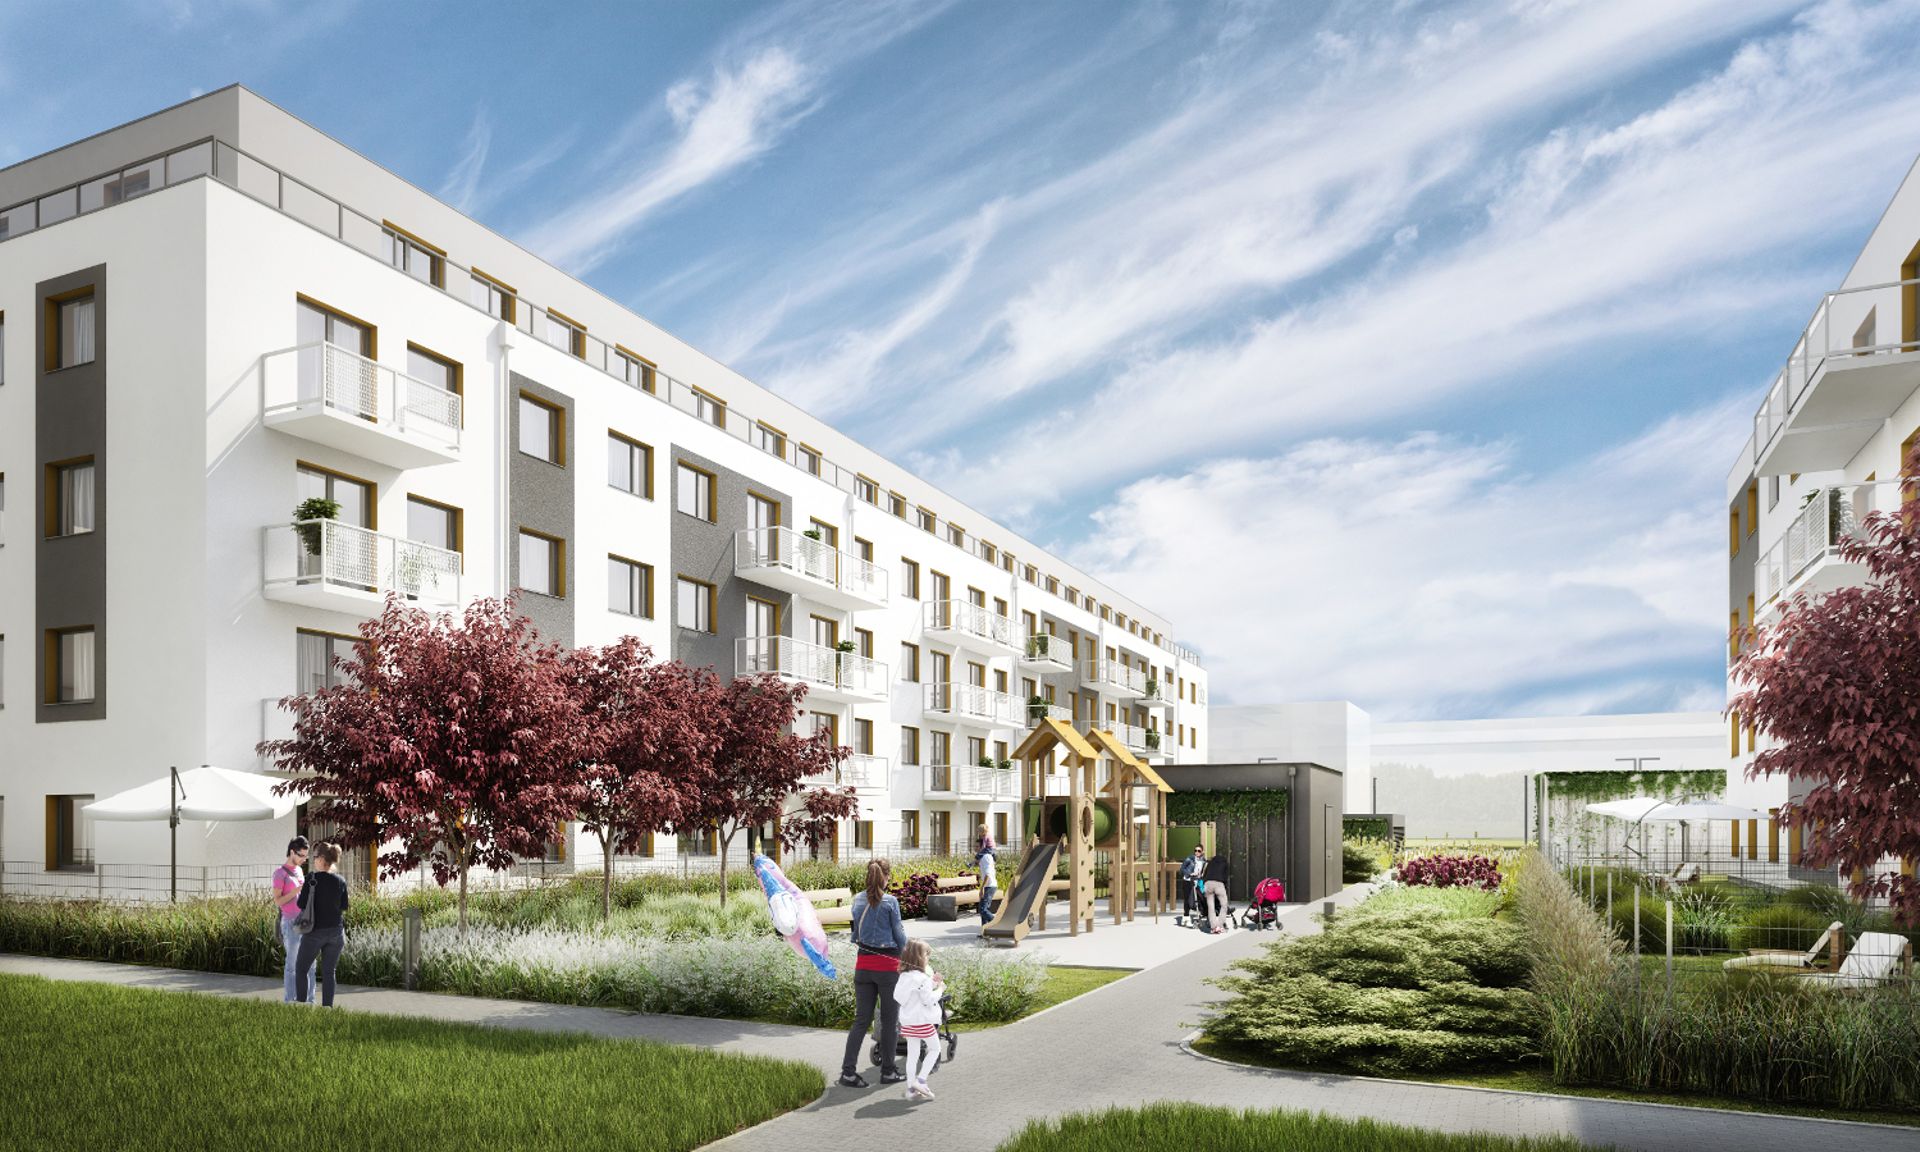 Wrocław: Buforowa 89 – Vantage Development startuje z inwestycją na ponad 400 mieszkań 